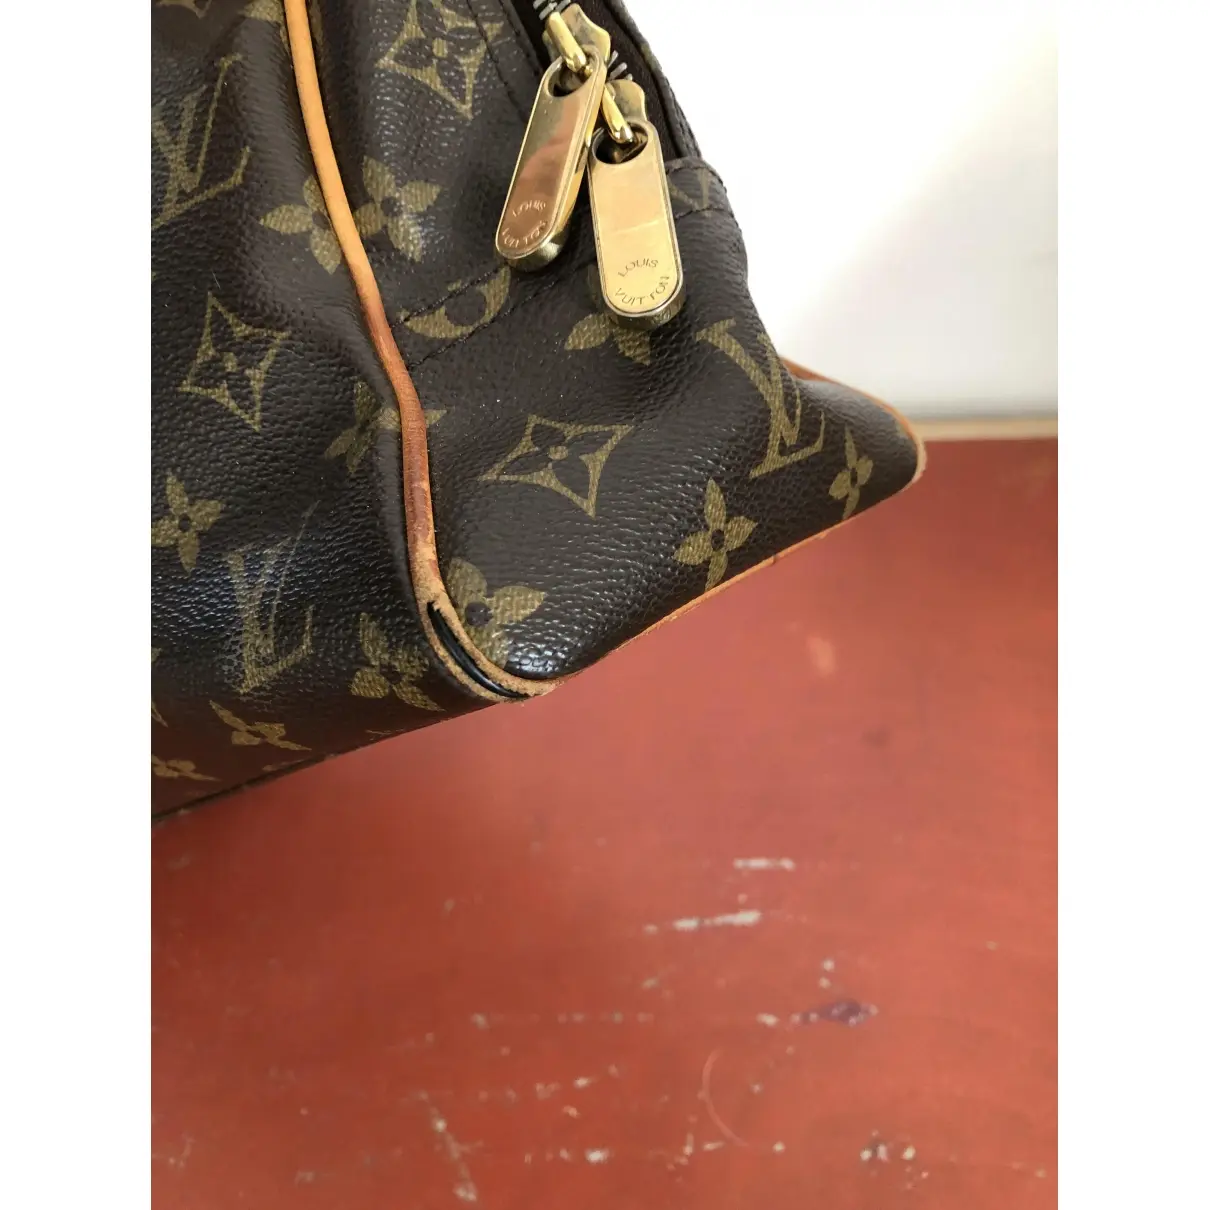 Manhattan cloth handbag Louis Vuitton